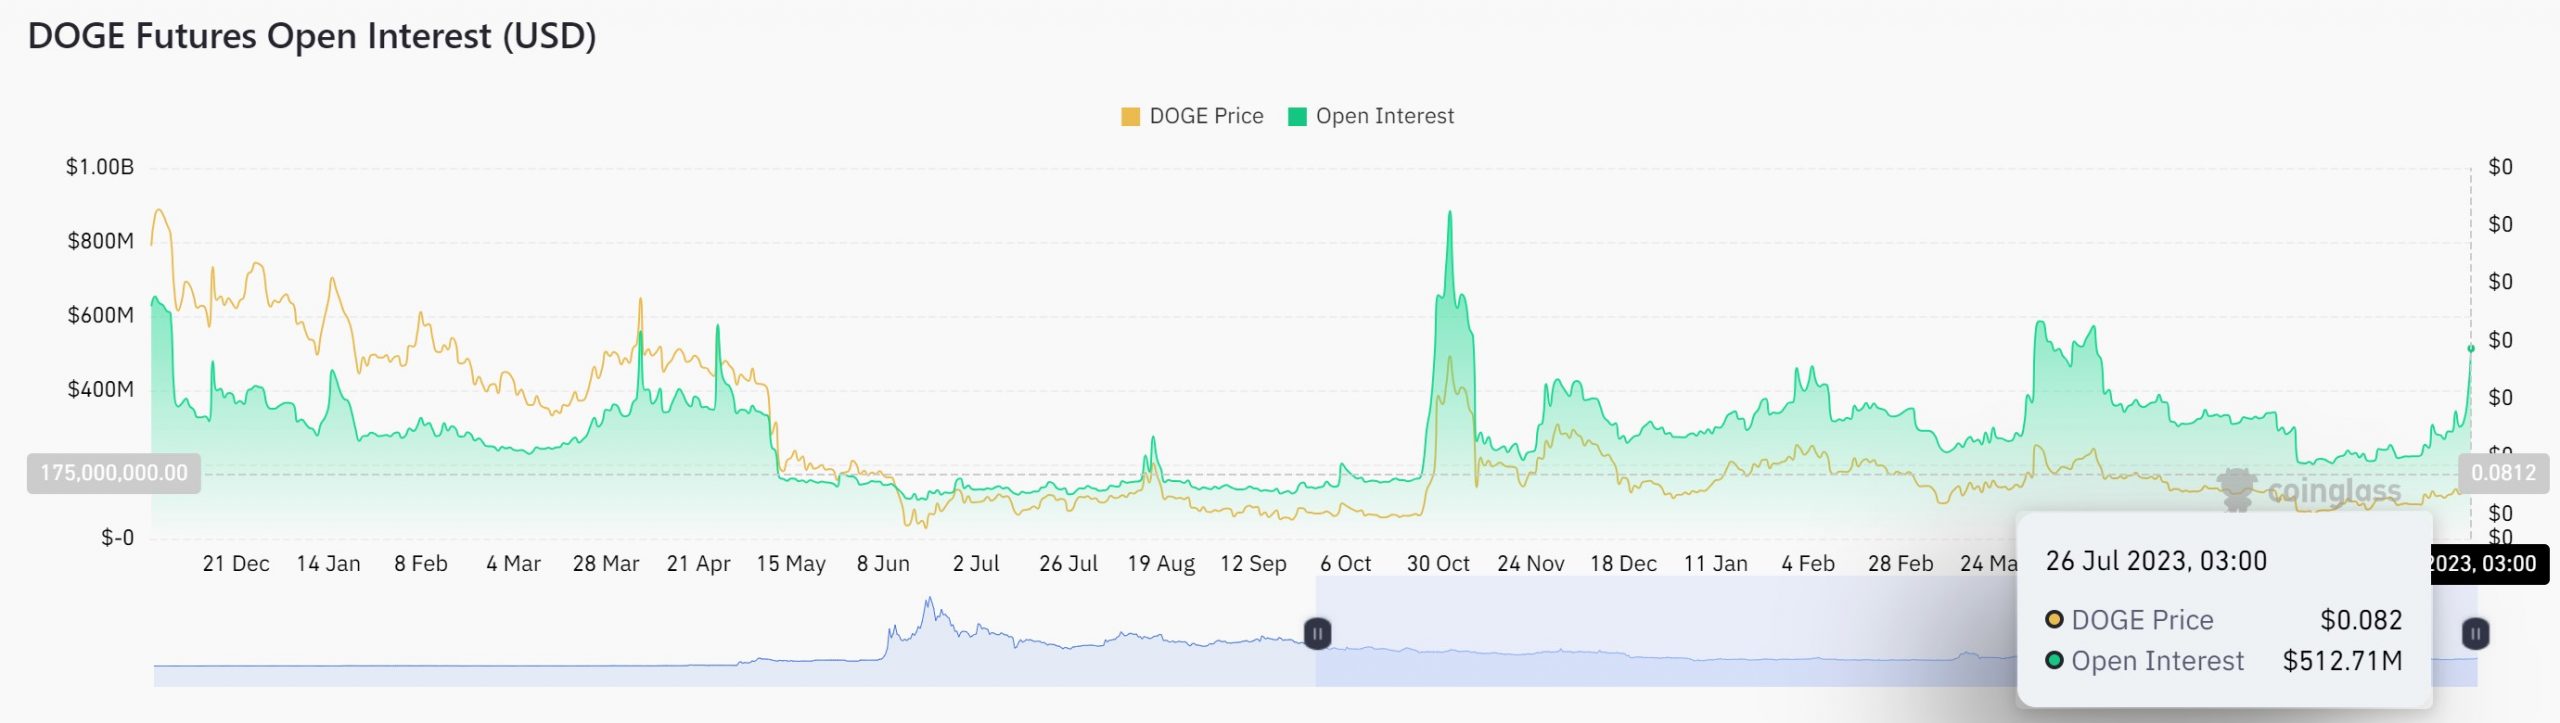 Anstieg im Open Interest von Dogecoin (DOGE)